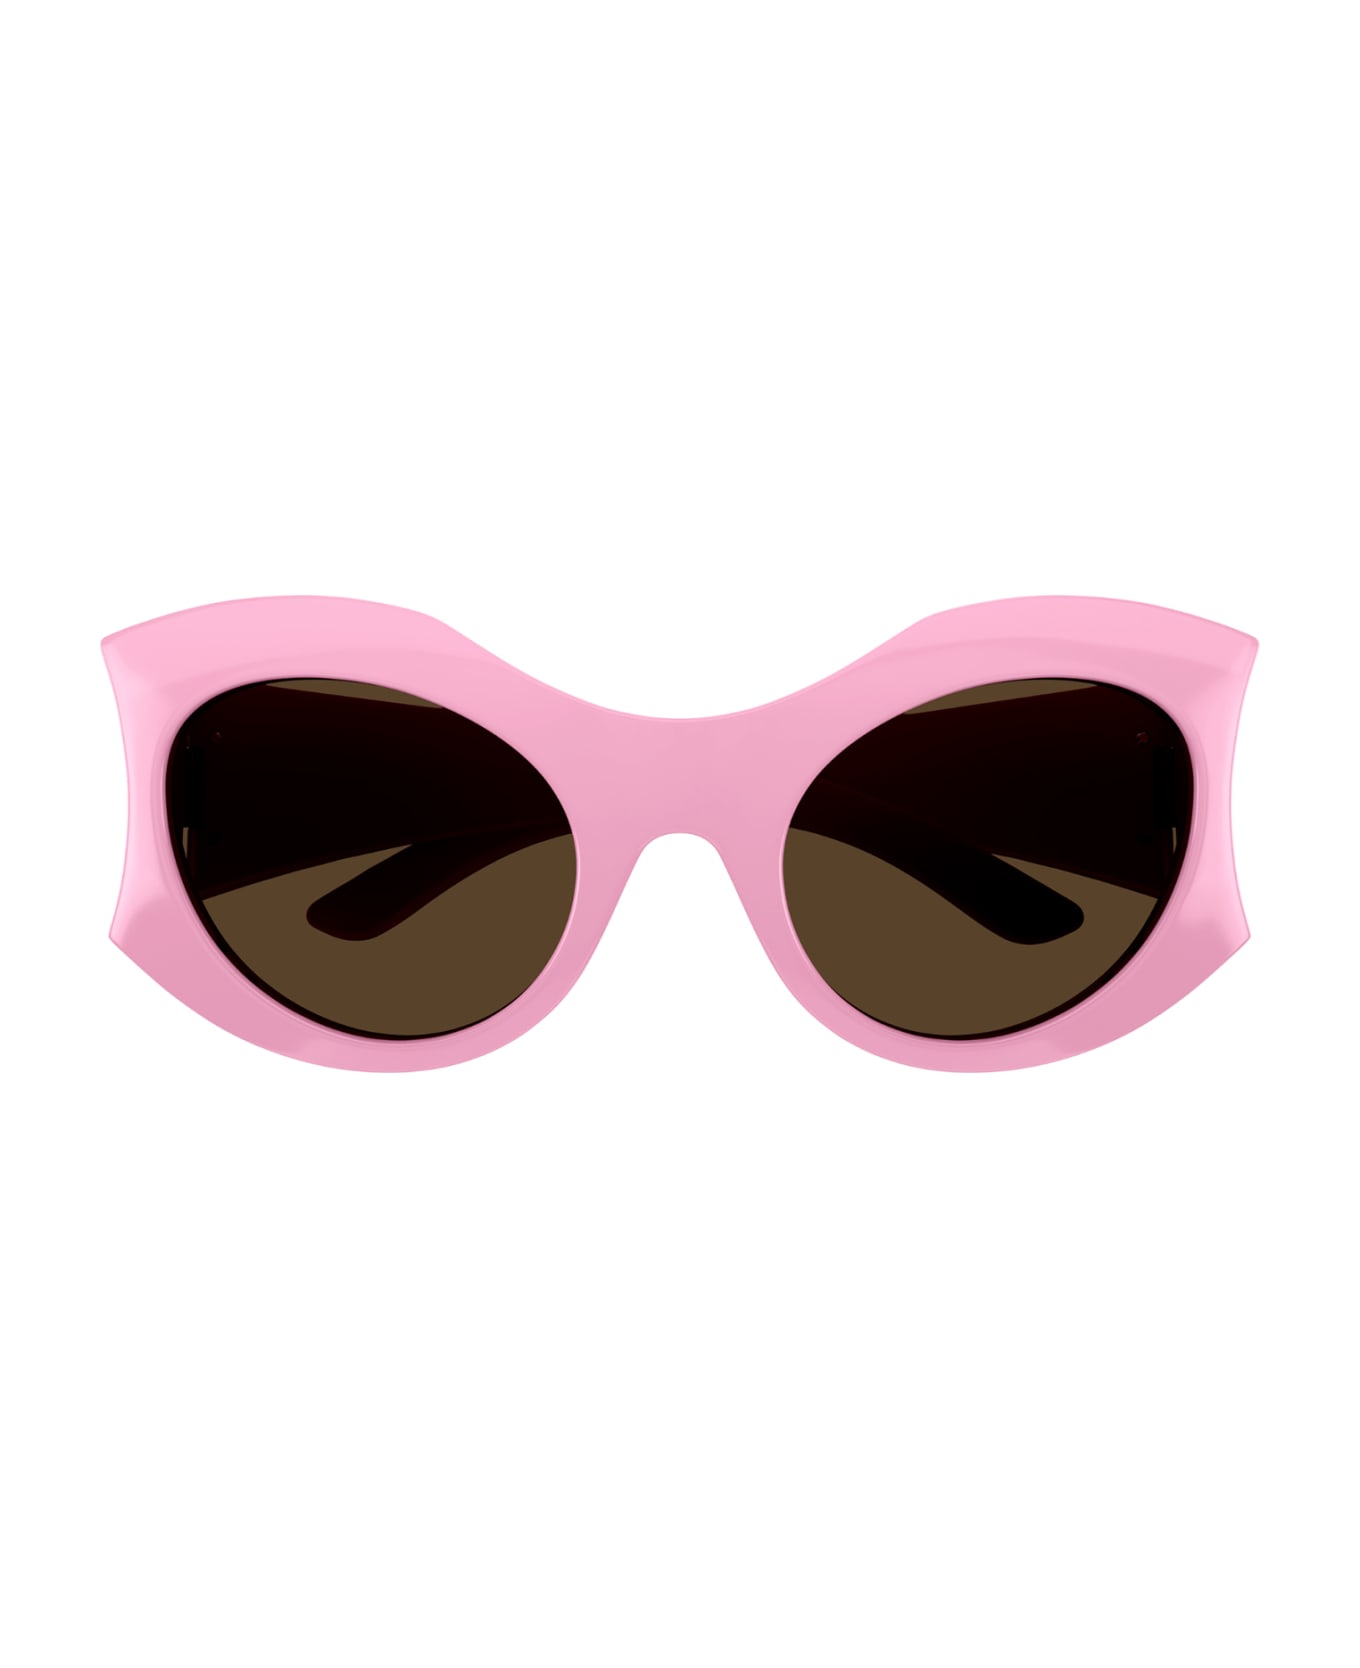 Balenciaga Eyewear 1fav4li0a - Pink Pink Brown